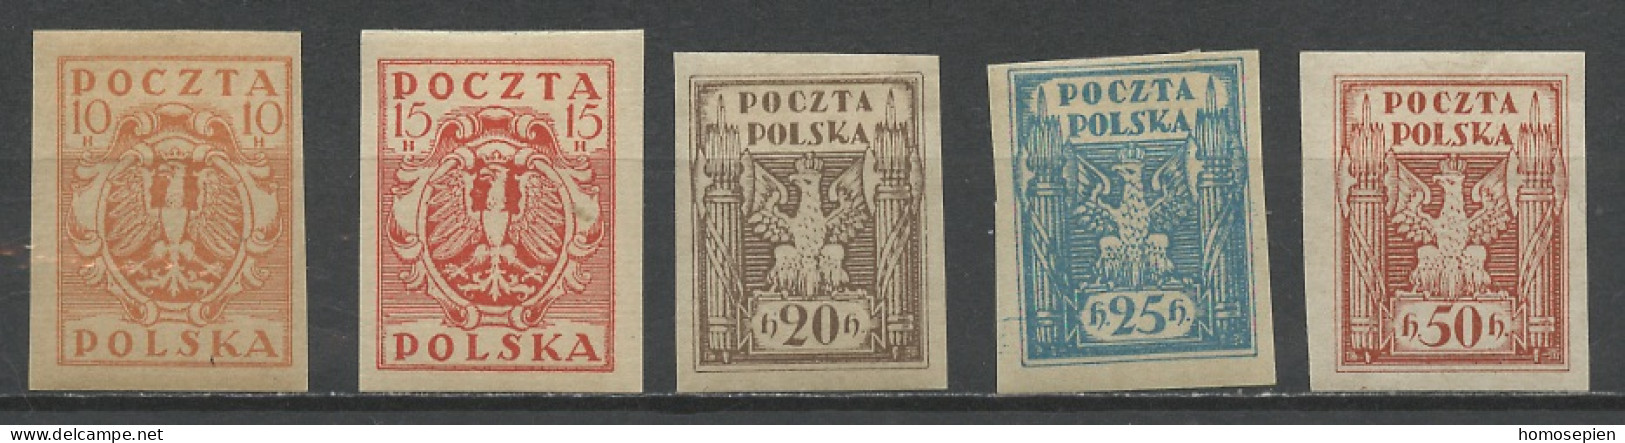 Pologne - Poland - Polen 1919 Y&T N°174 à 178 - Michel N°68 à 72 * - Sujets Divers - Unused Stamps